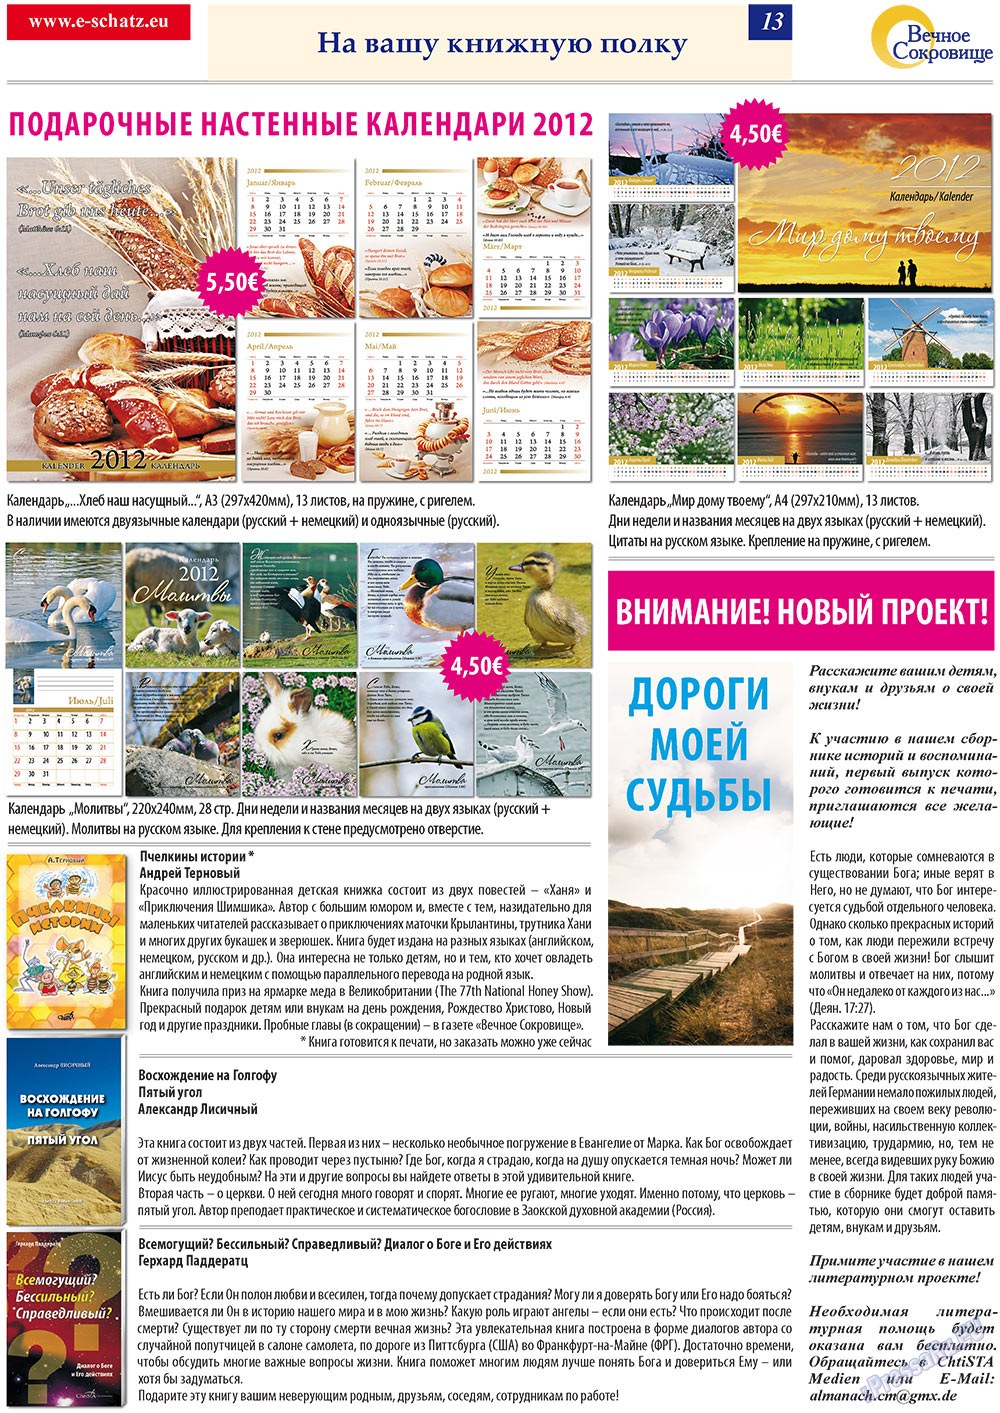 Вечное сокровище, газета. 2011 №6 стр.13